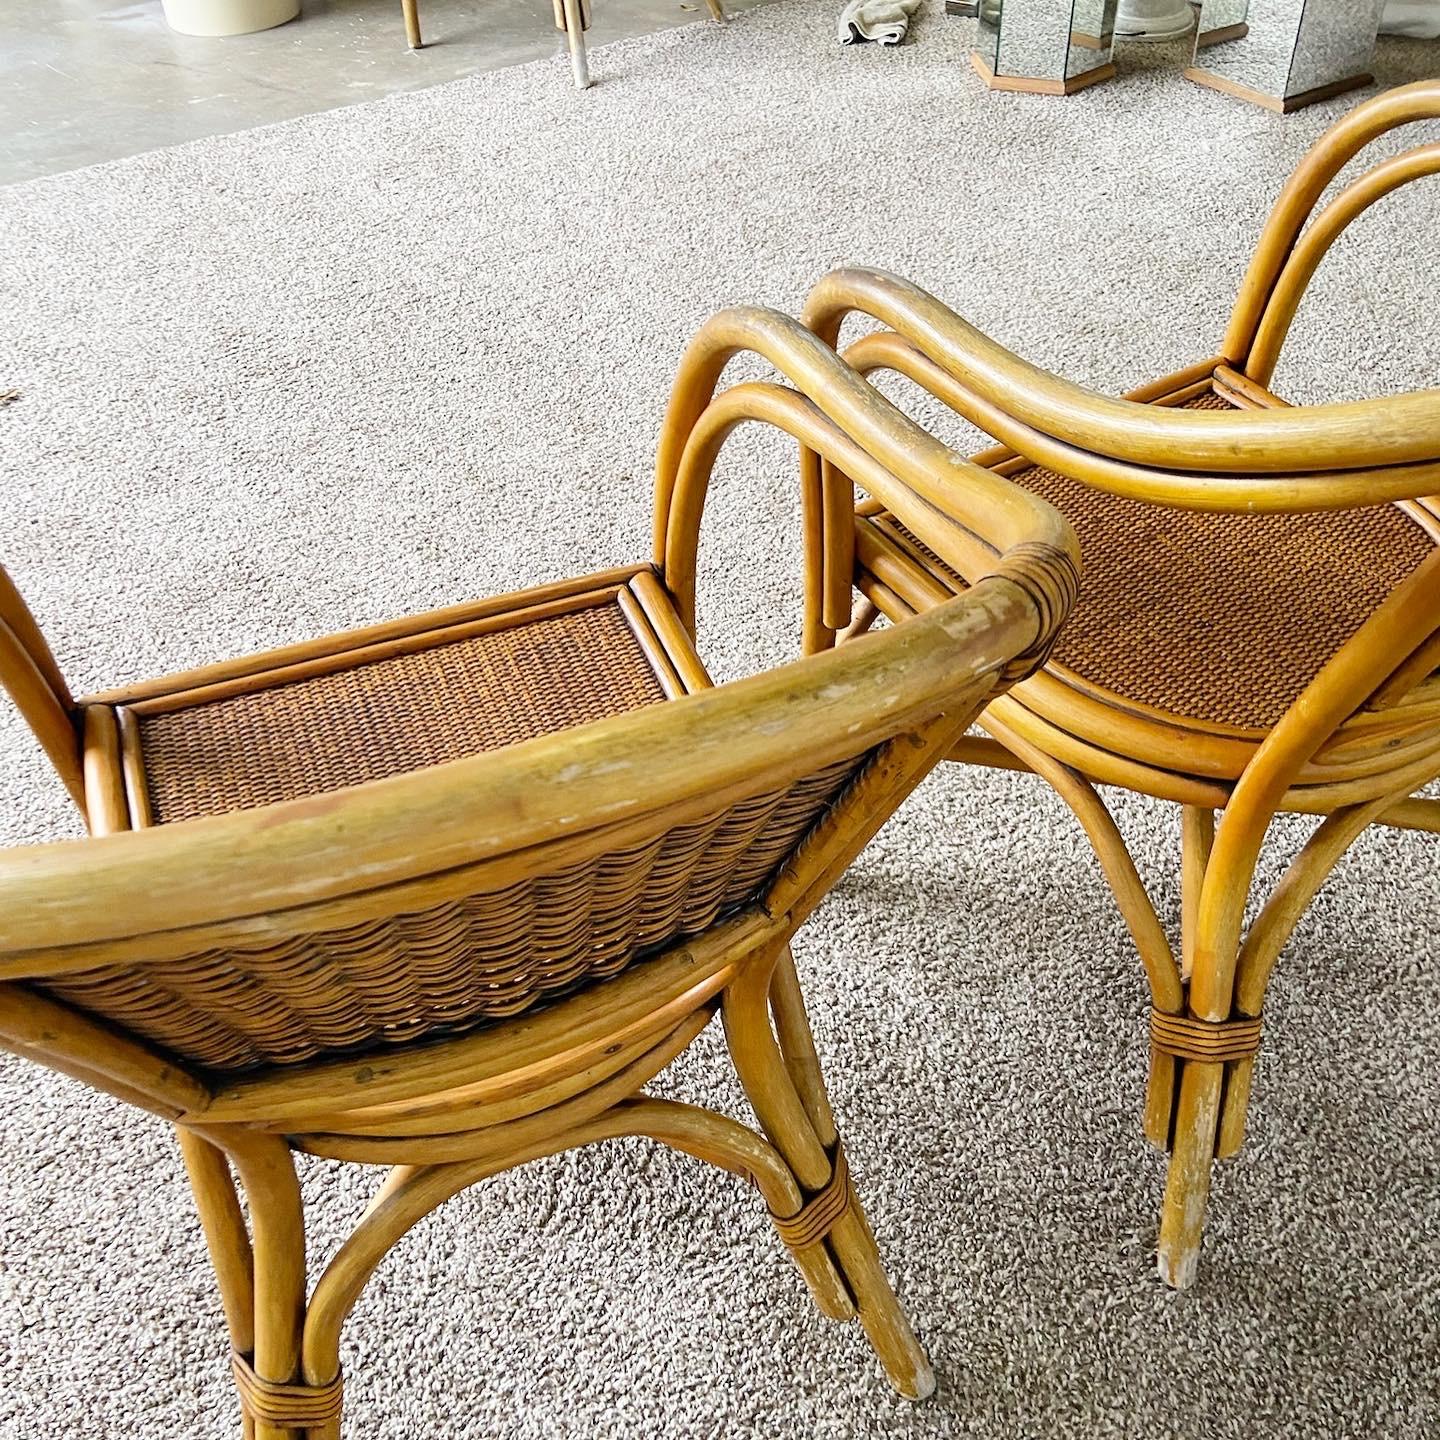 Speisen Sie stilvoll mit unserem Set aus vier Boho-Chic-Bambus-Rattan-Sesseln im Vintage-Stil. Jedes Exemplar hat eine Rückenlehne und eine Sitzfläche aus Korbgeflecht, die für ein ausgeprägtes böhmisches Flair sorgen.

Set mit vier Sesseln im